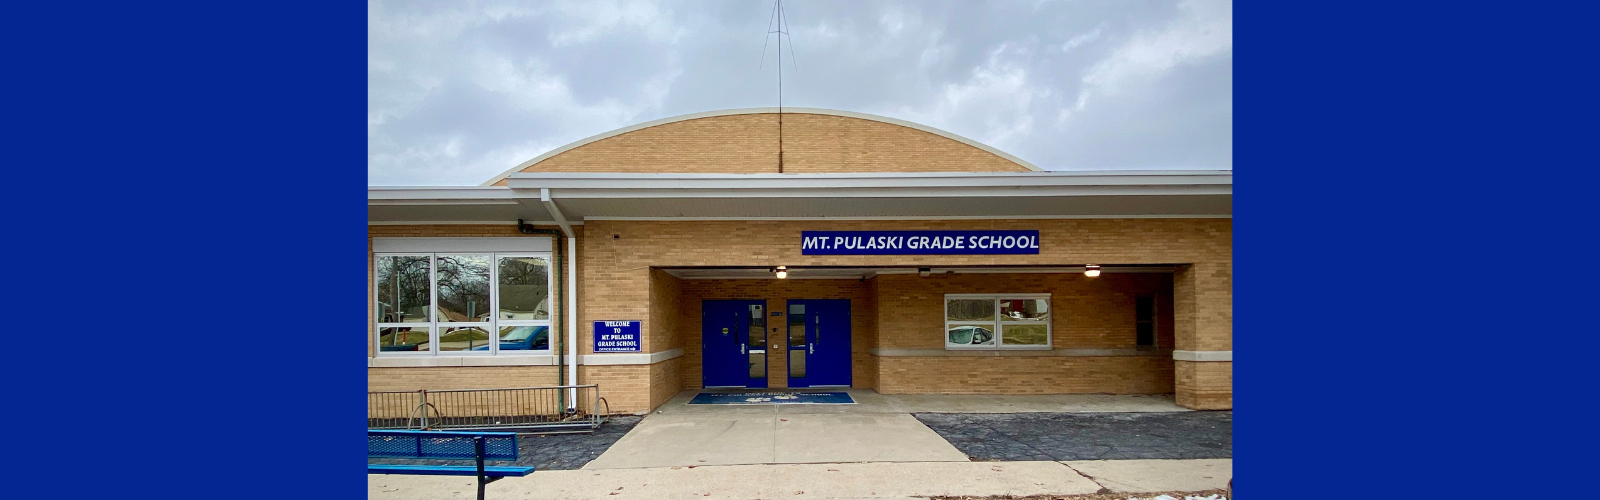 Mount Pulaski Grade School